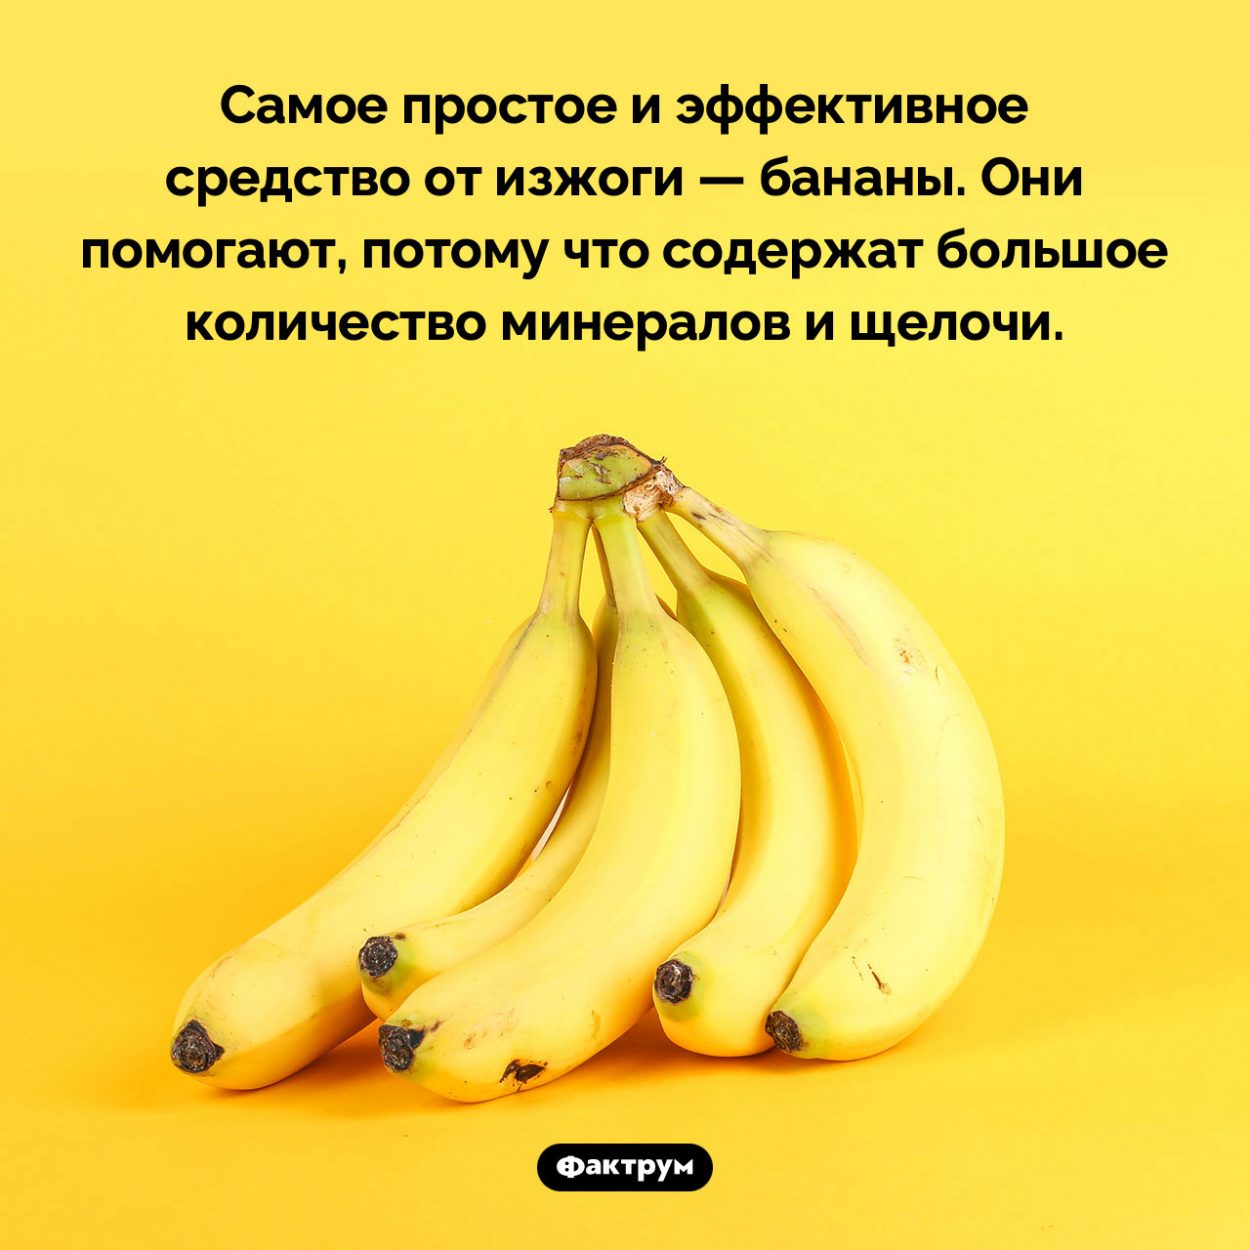 Бананы помогают от изжоги. Самое простое и эффективное средство от изжоги — бананы. Они помогают, потому что содержат большое количество минералов и щелочи.